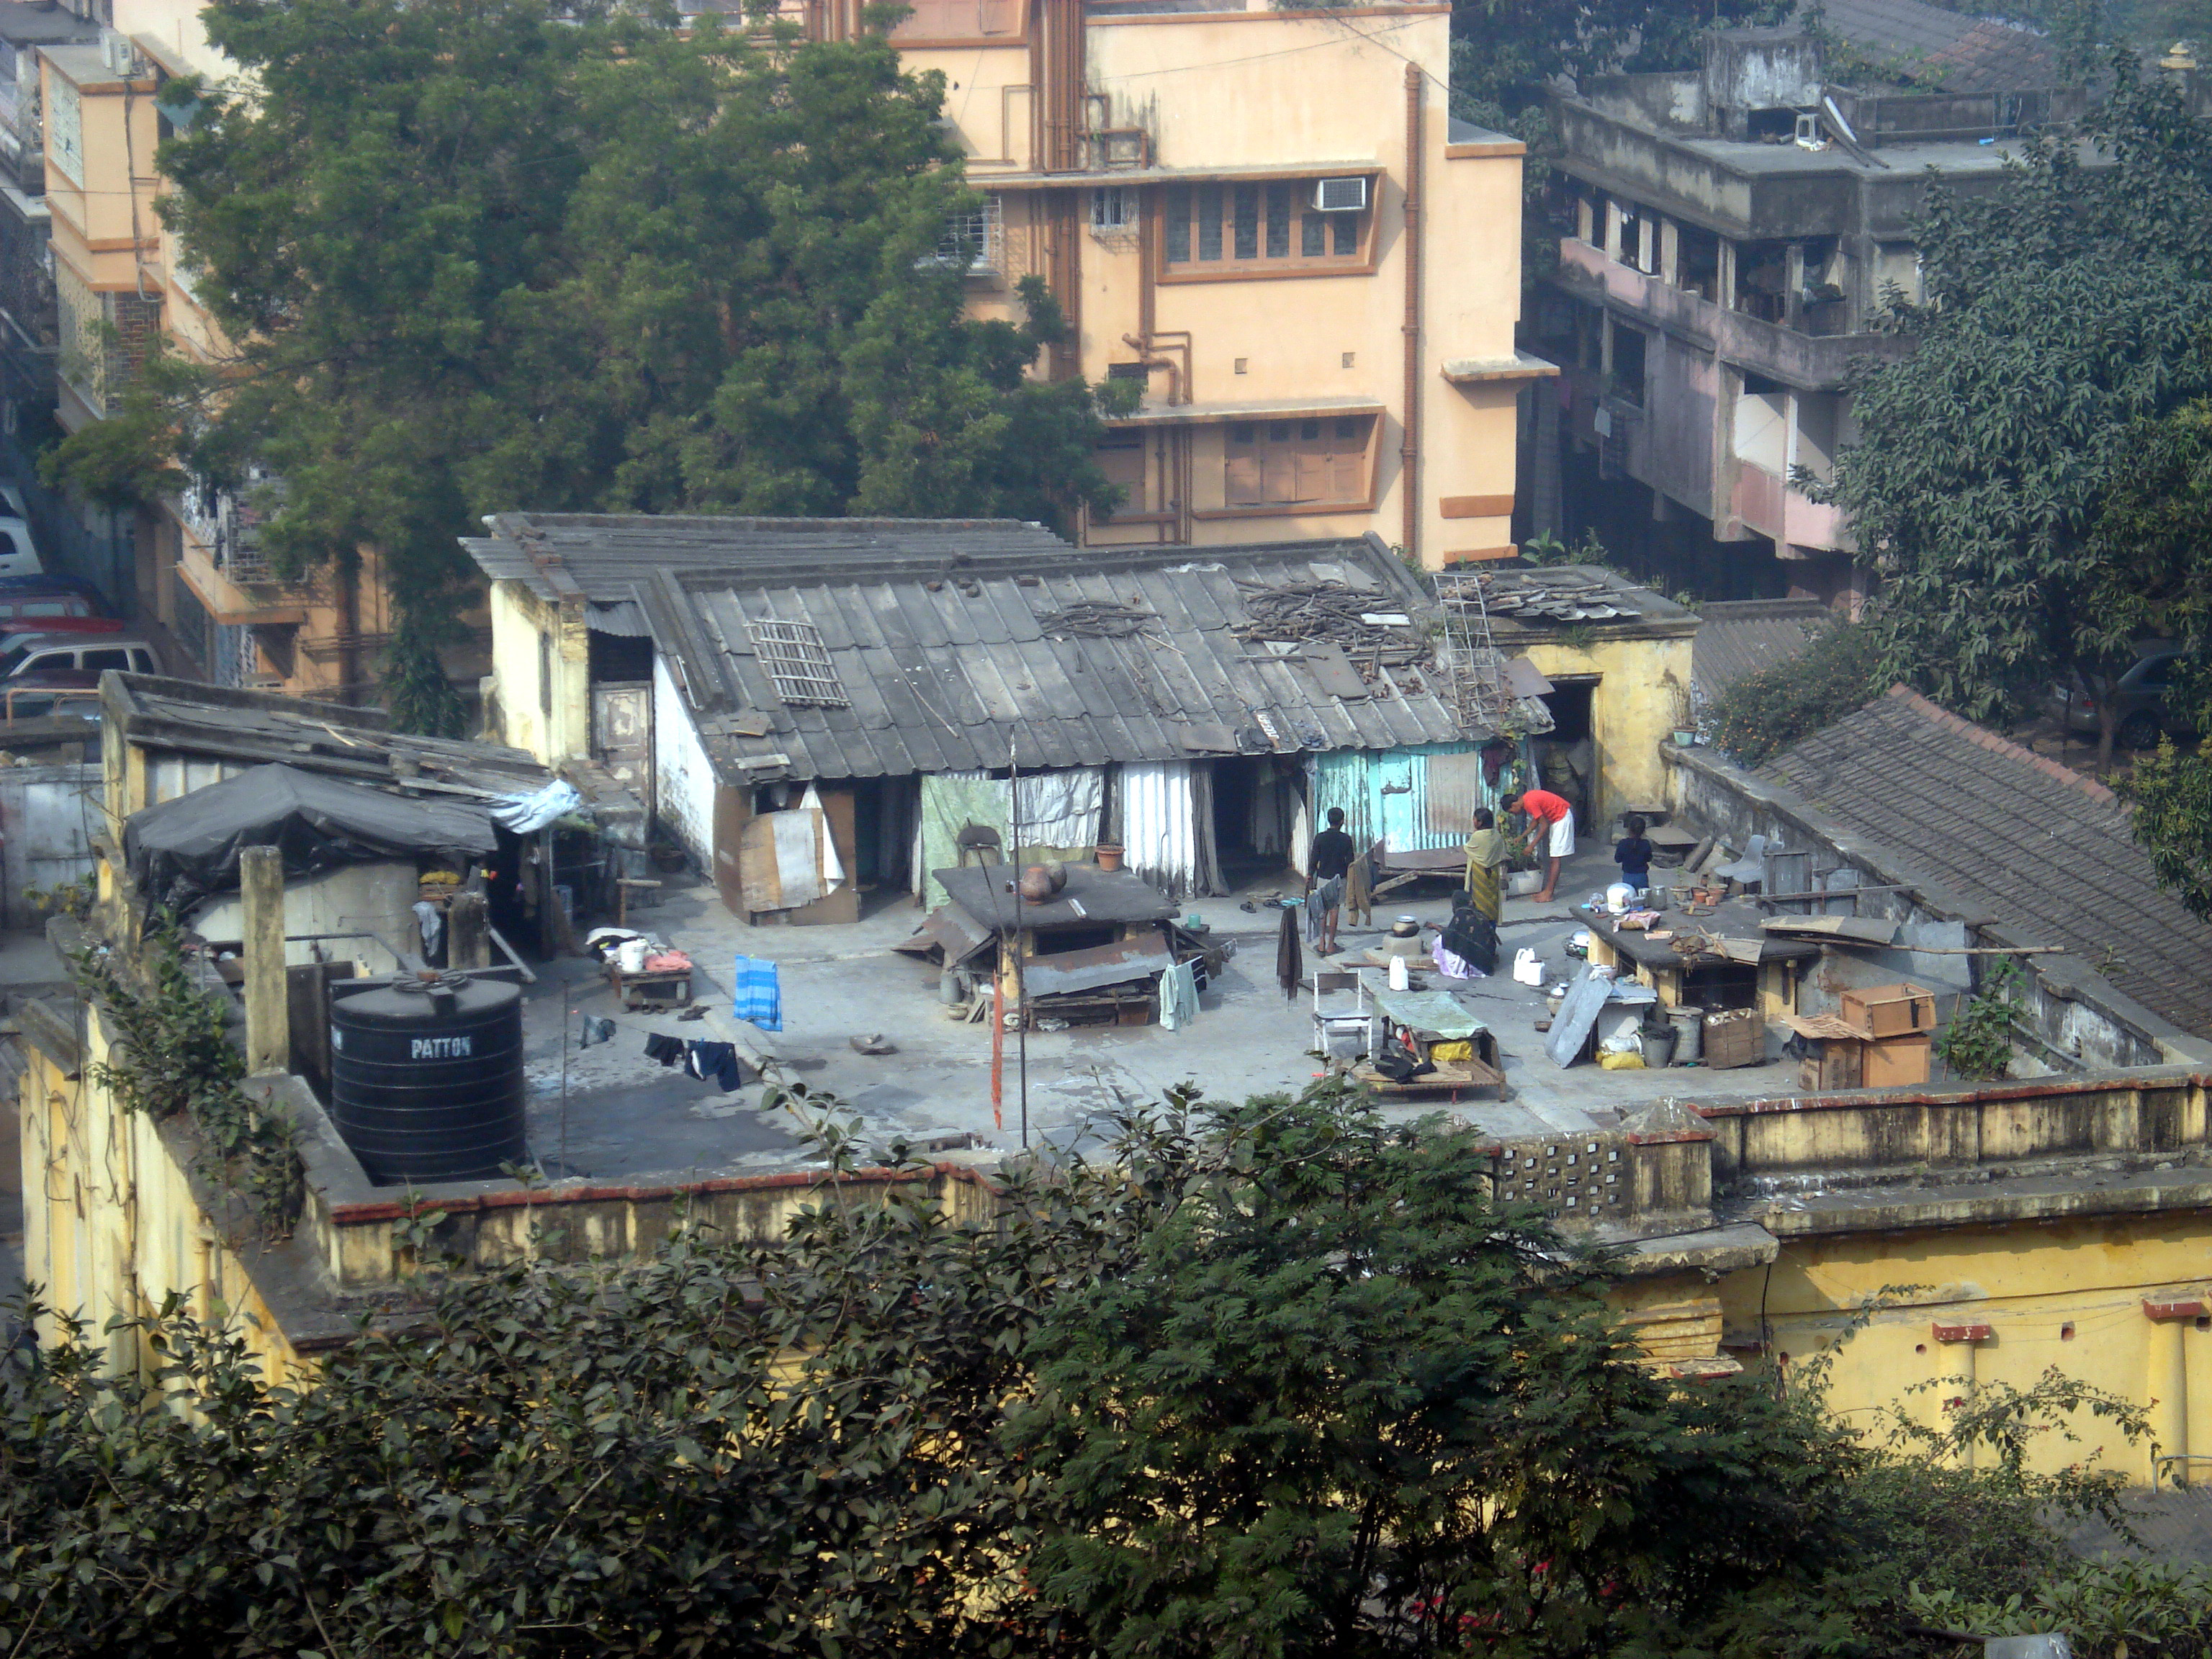 Informal housing settlement in Kolkata, India